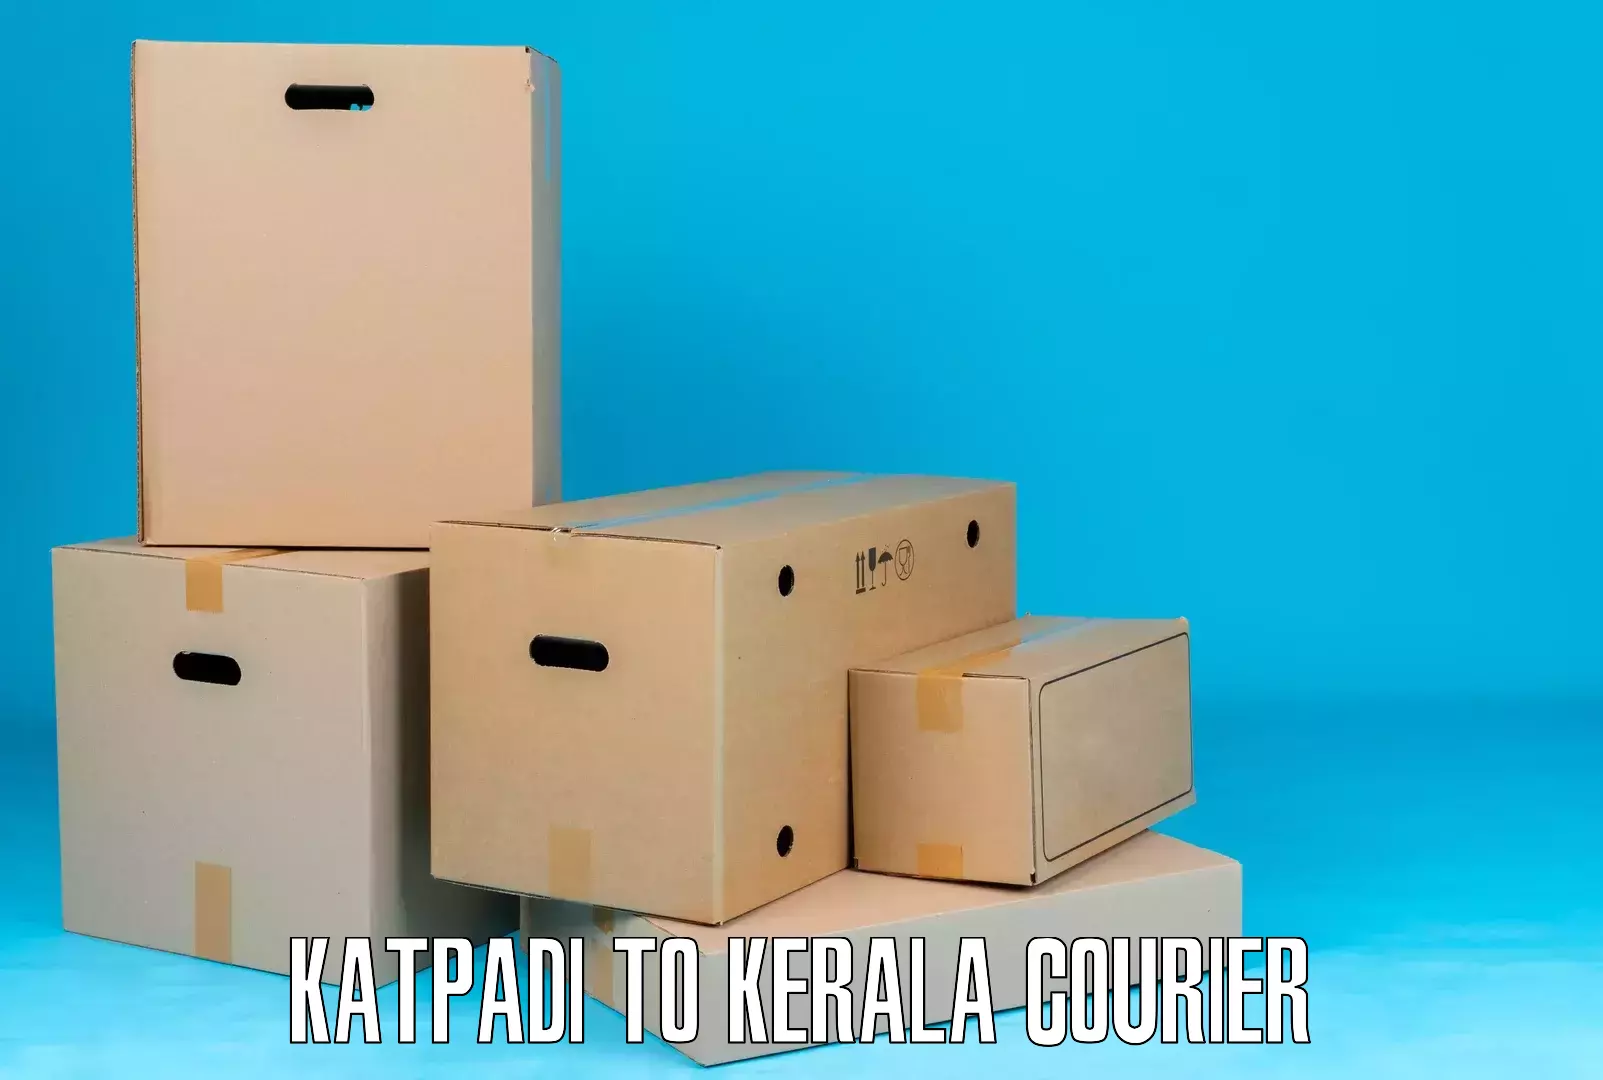 Express package transport Katpadi to Kottayam